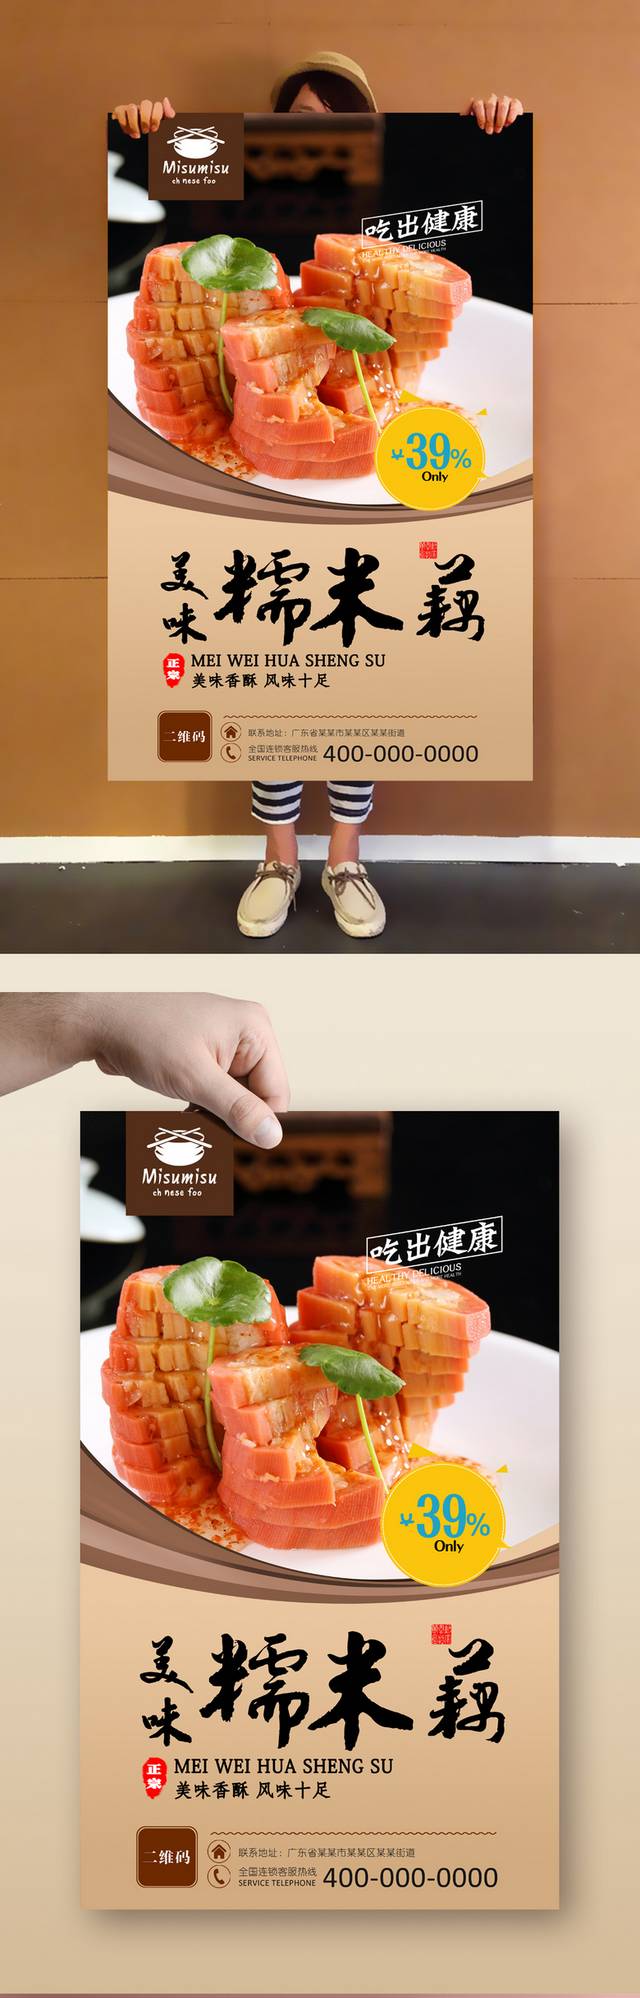 高清美味糯米藕宣传海报设计psd